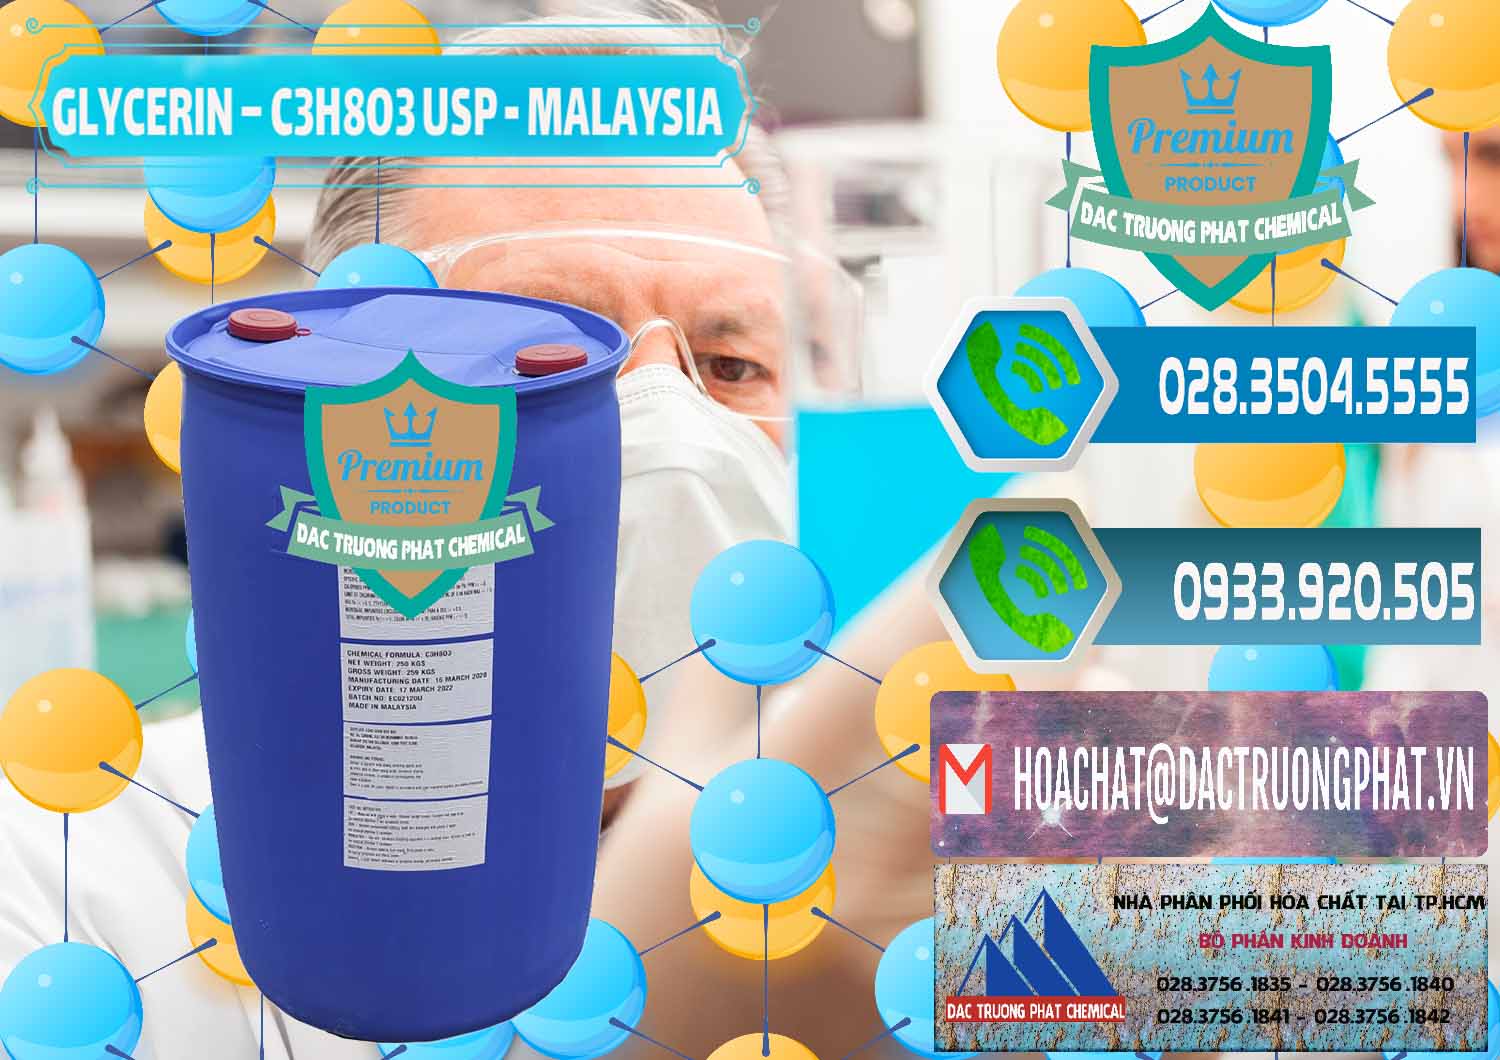 Cung ứng và bán Glycerin – C3H8O3 USP Malaysia - 0233 - Bán ( cung cấp ) hóa chất tại TP.HCM - congtyhoachat.net